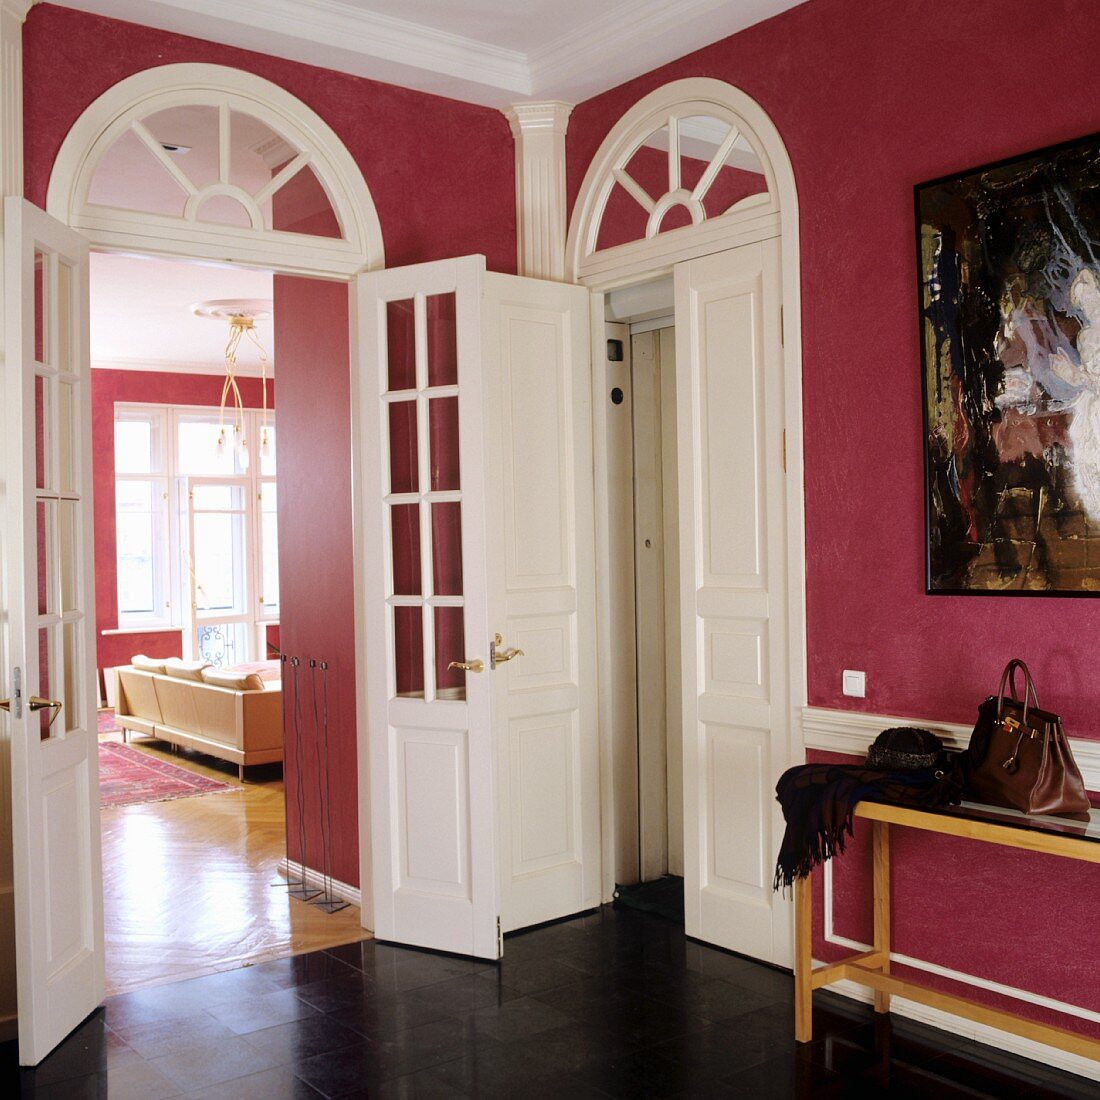 Vorraum mit hellroter Bemalung an Wand und Blick ins Wohnzimmer durch hohe Zimmertür mit Glasfüllung und Rundbogen-Oberlichtern